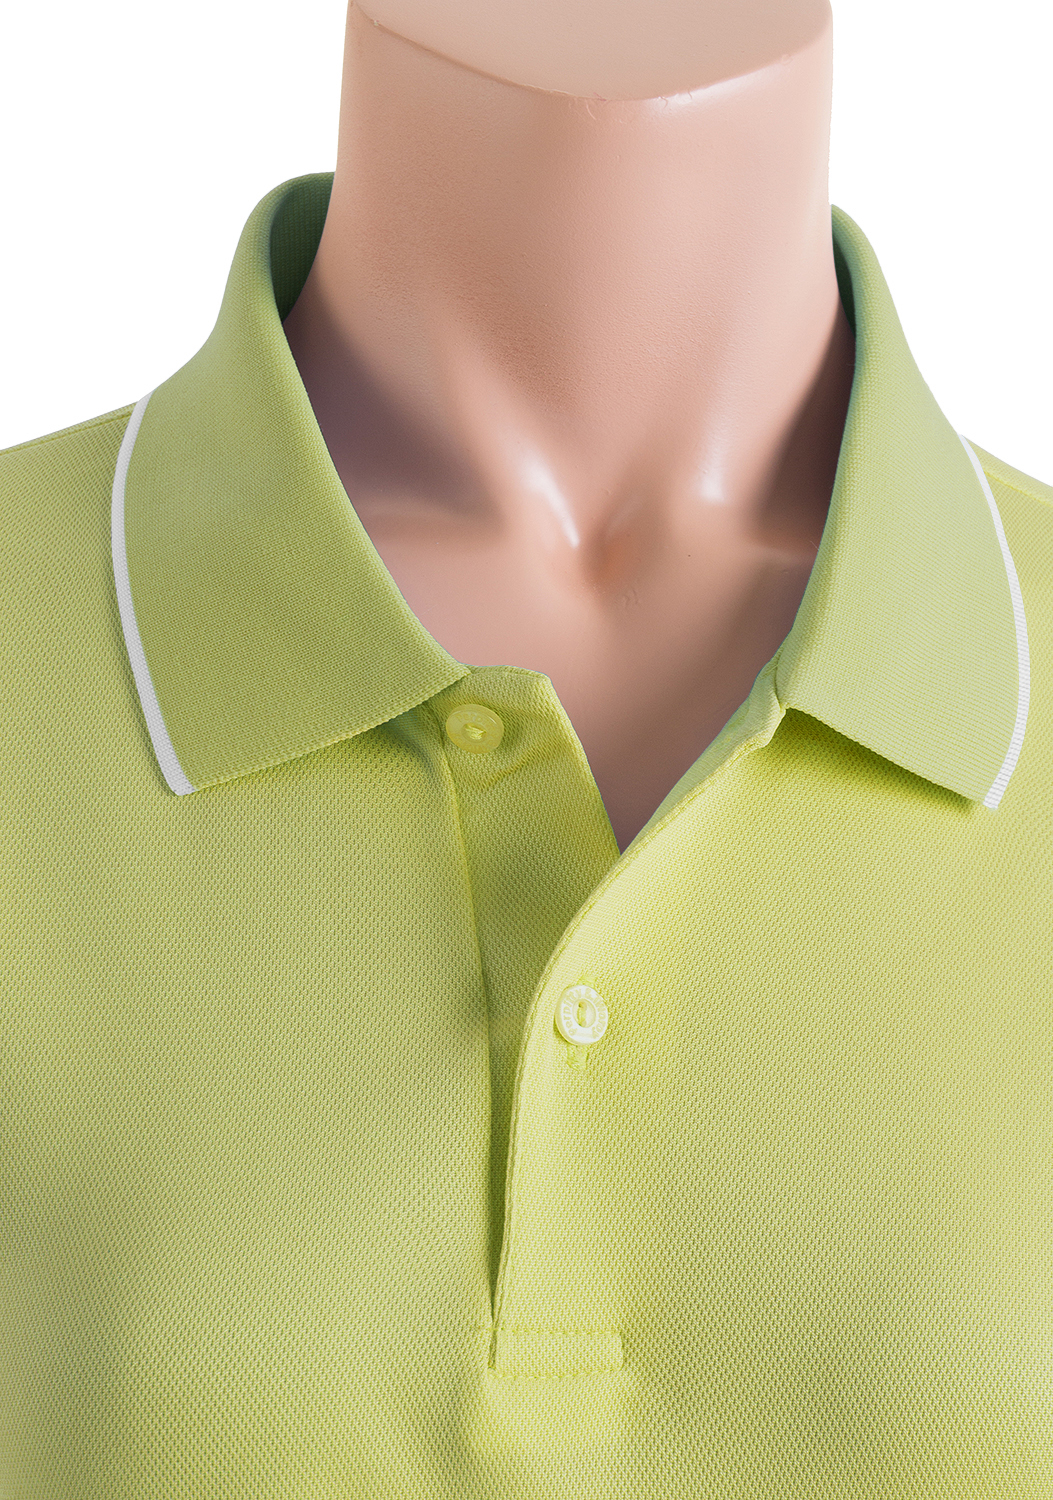 CLOVERY Women's Sportswear 2-Button Placket Polo Short Sleeve Shirt (S-3XL) 